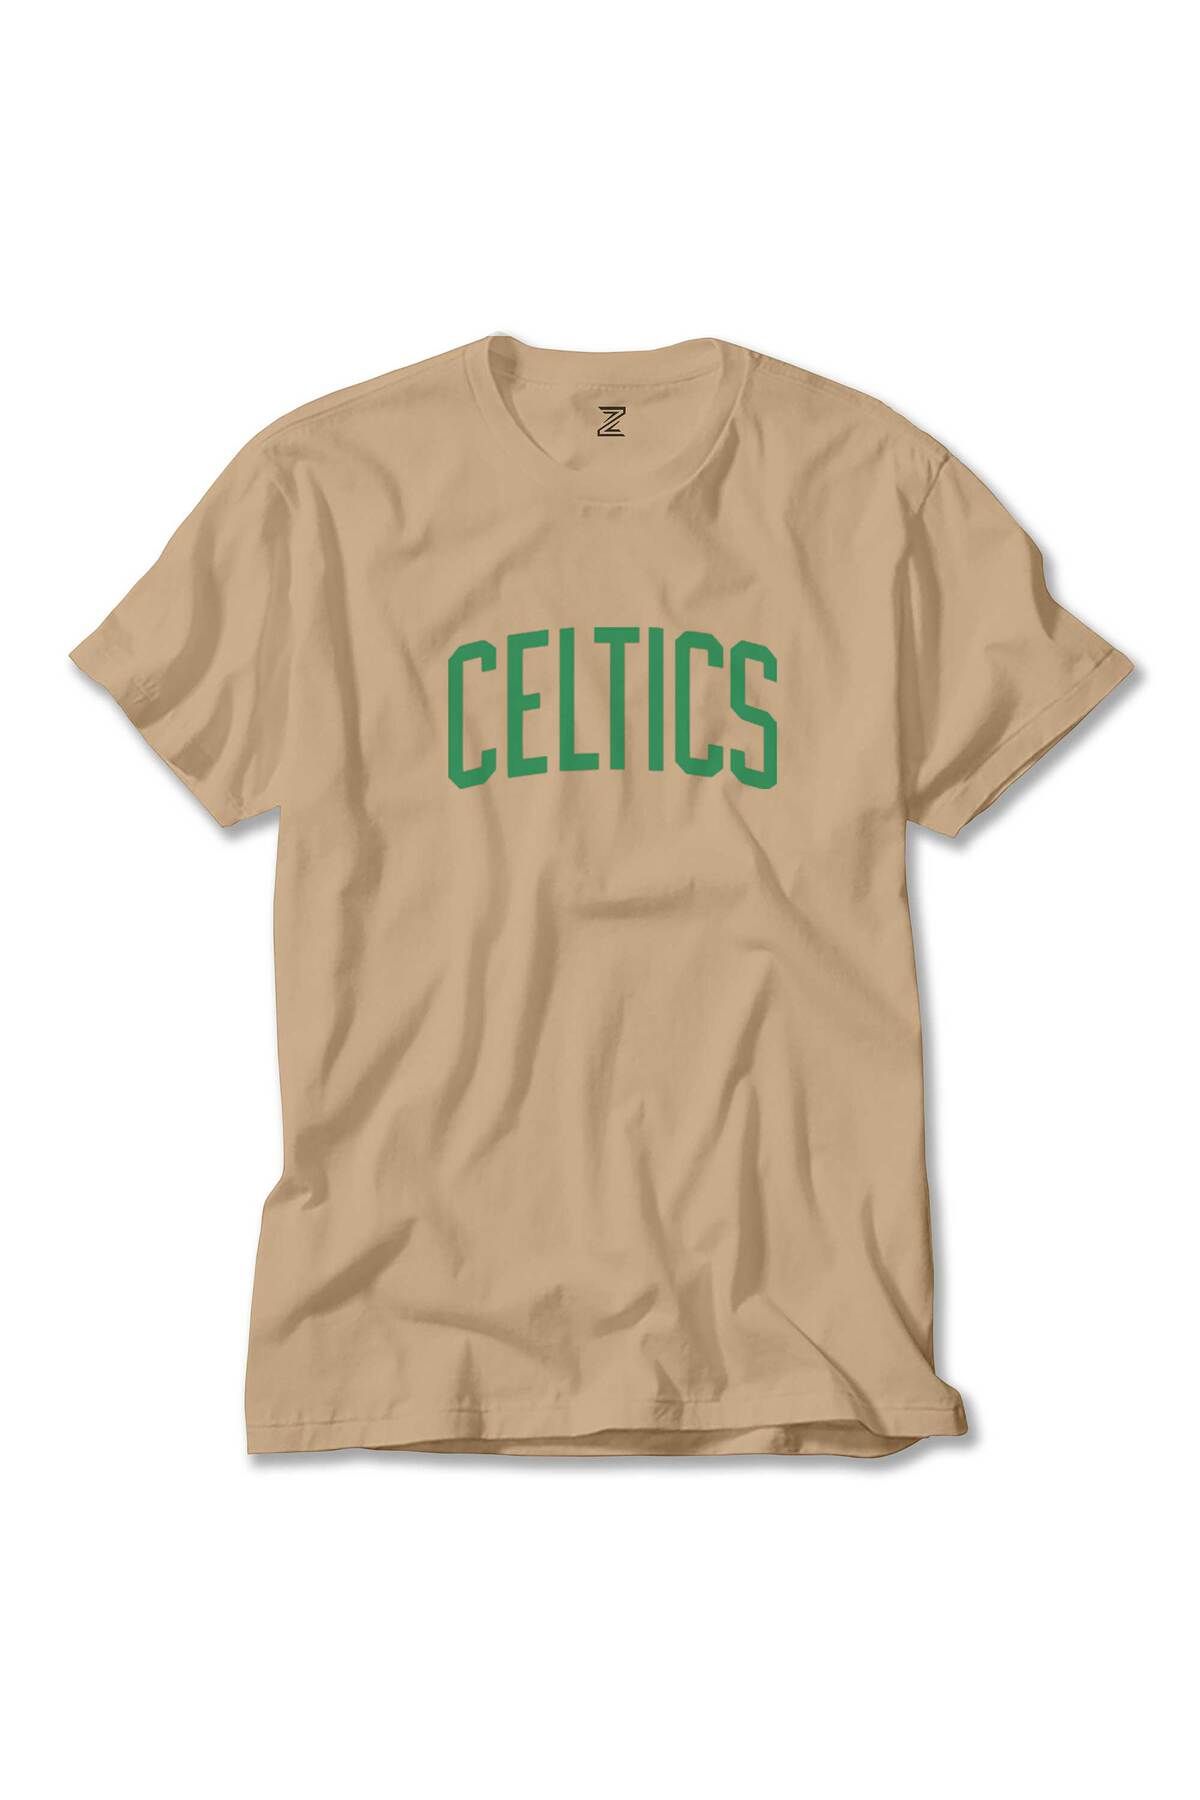 Z zepplin Boston Celtics Yazı Krem Tişört